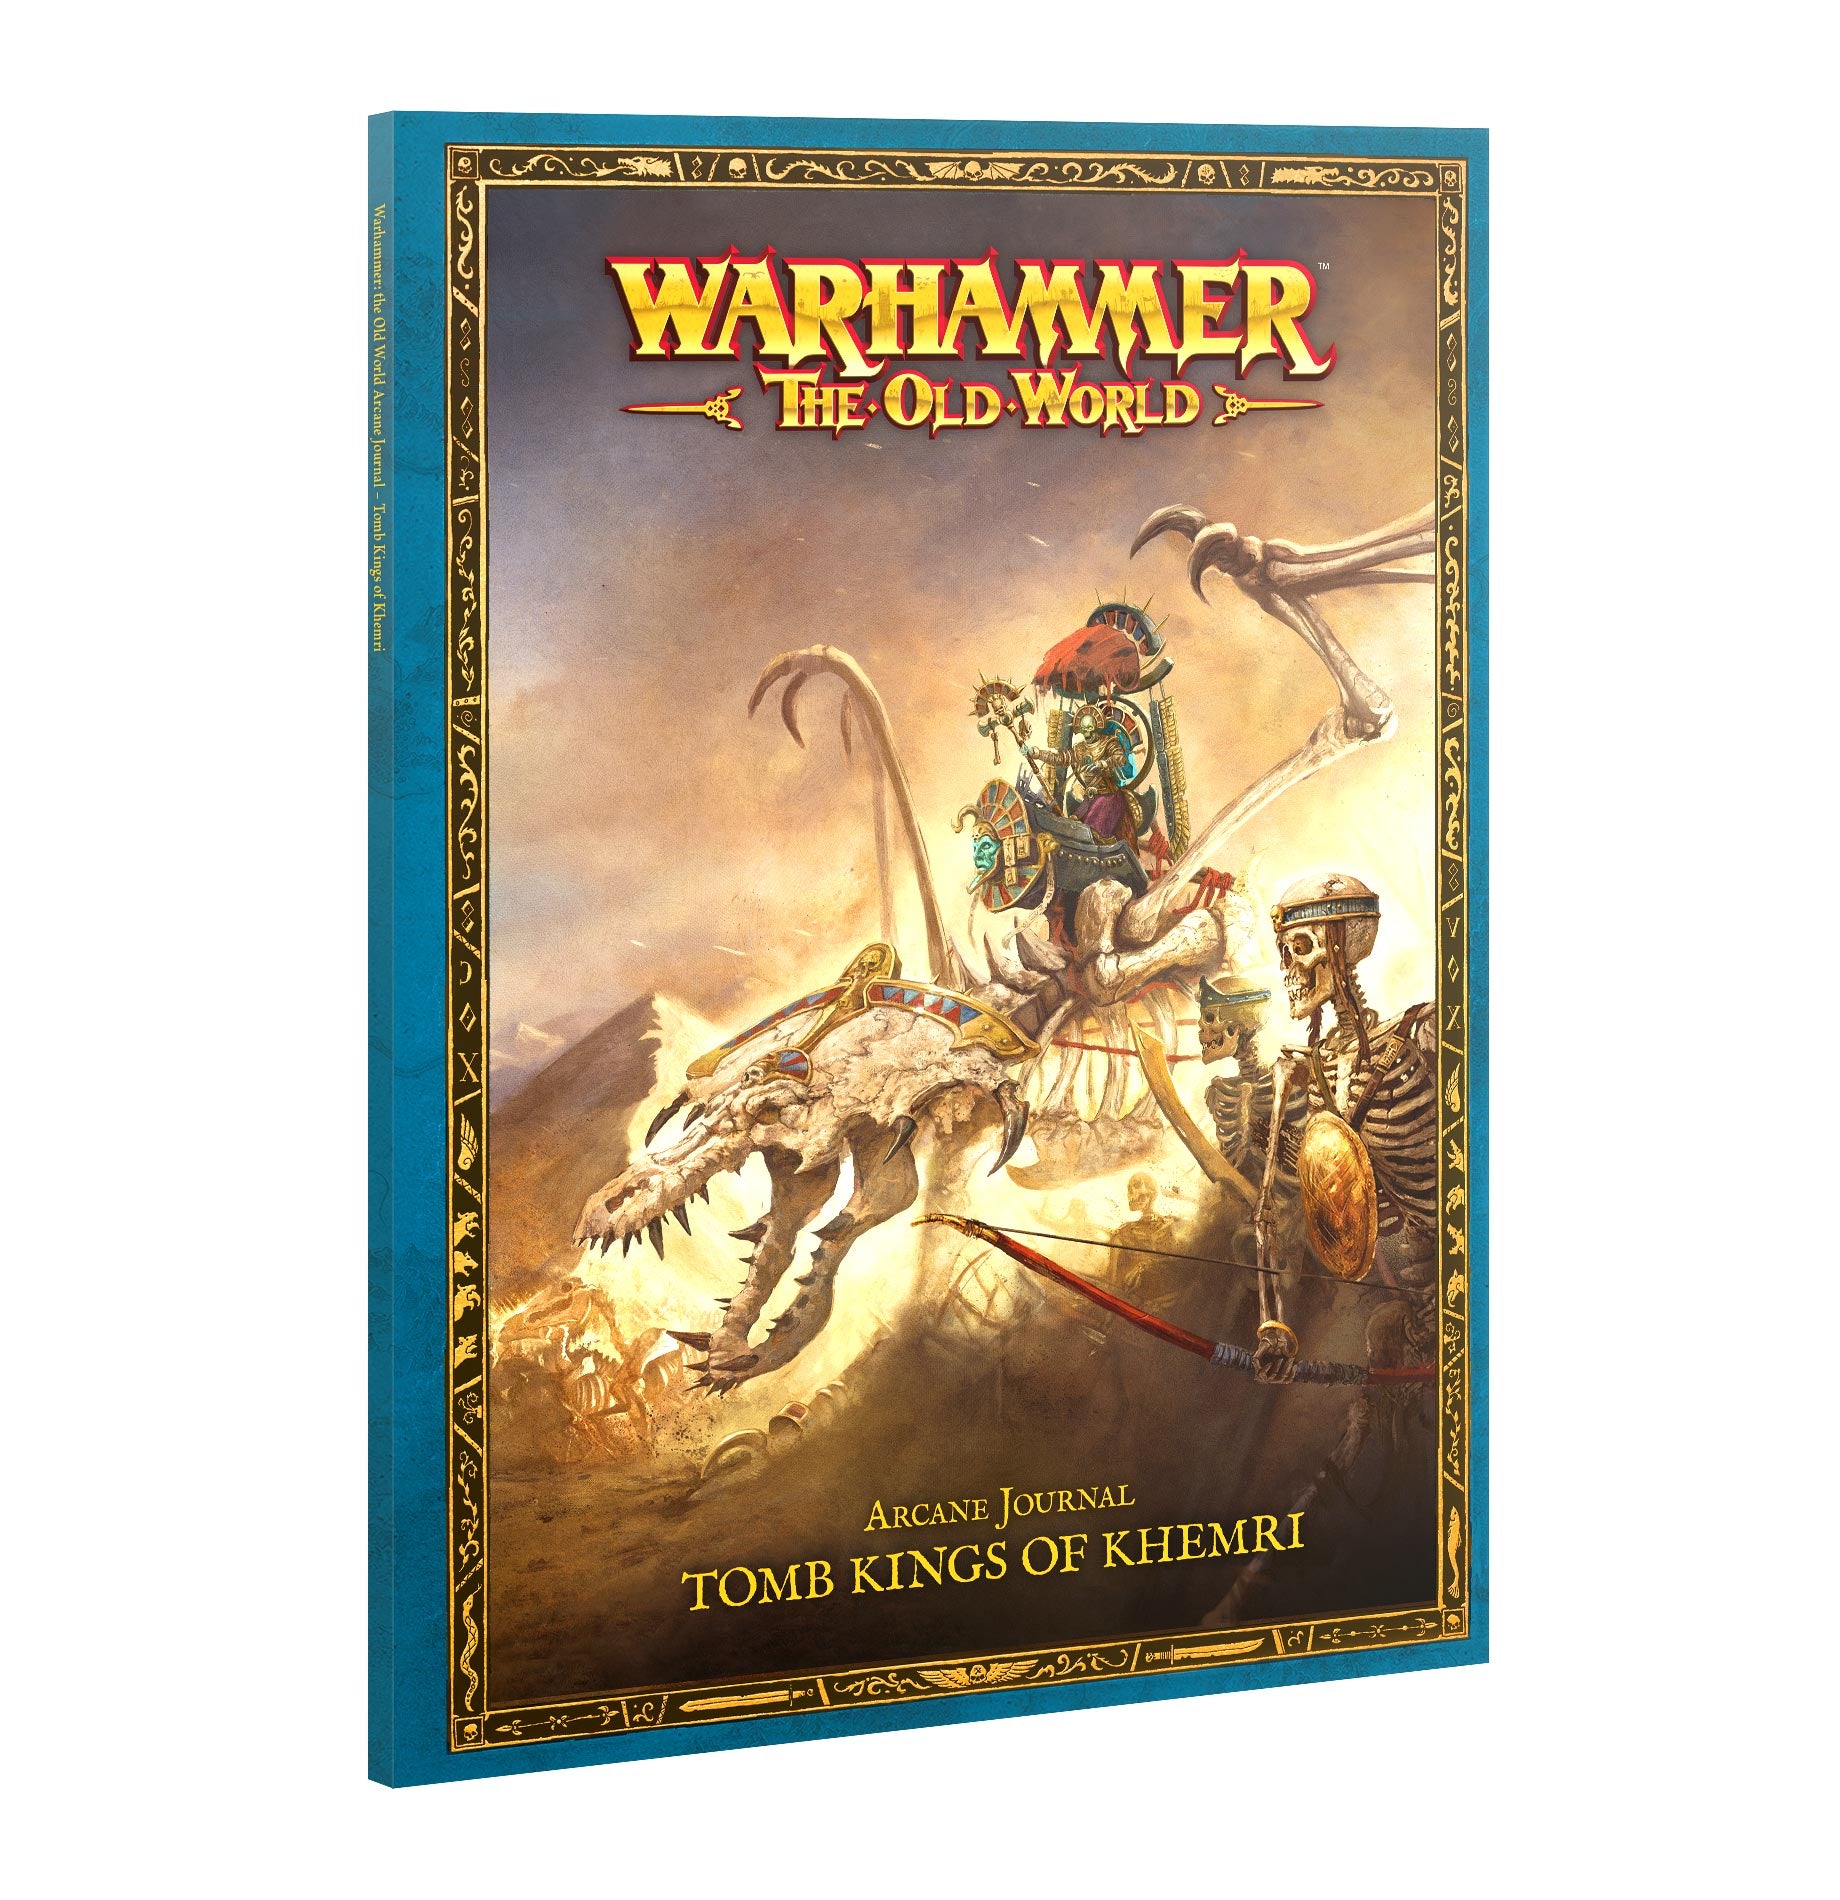 Warhammer 40,000: The Old World Arcane Journal: Tomb Kings of Khemri MK1ZQMGEX7 |0|